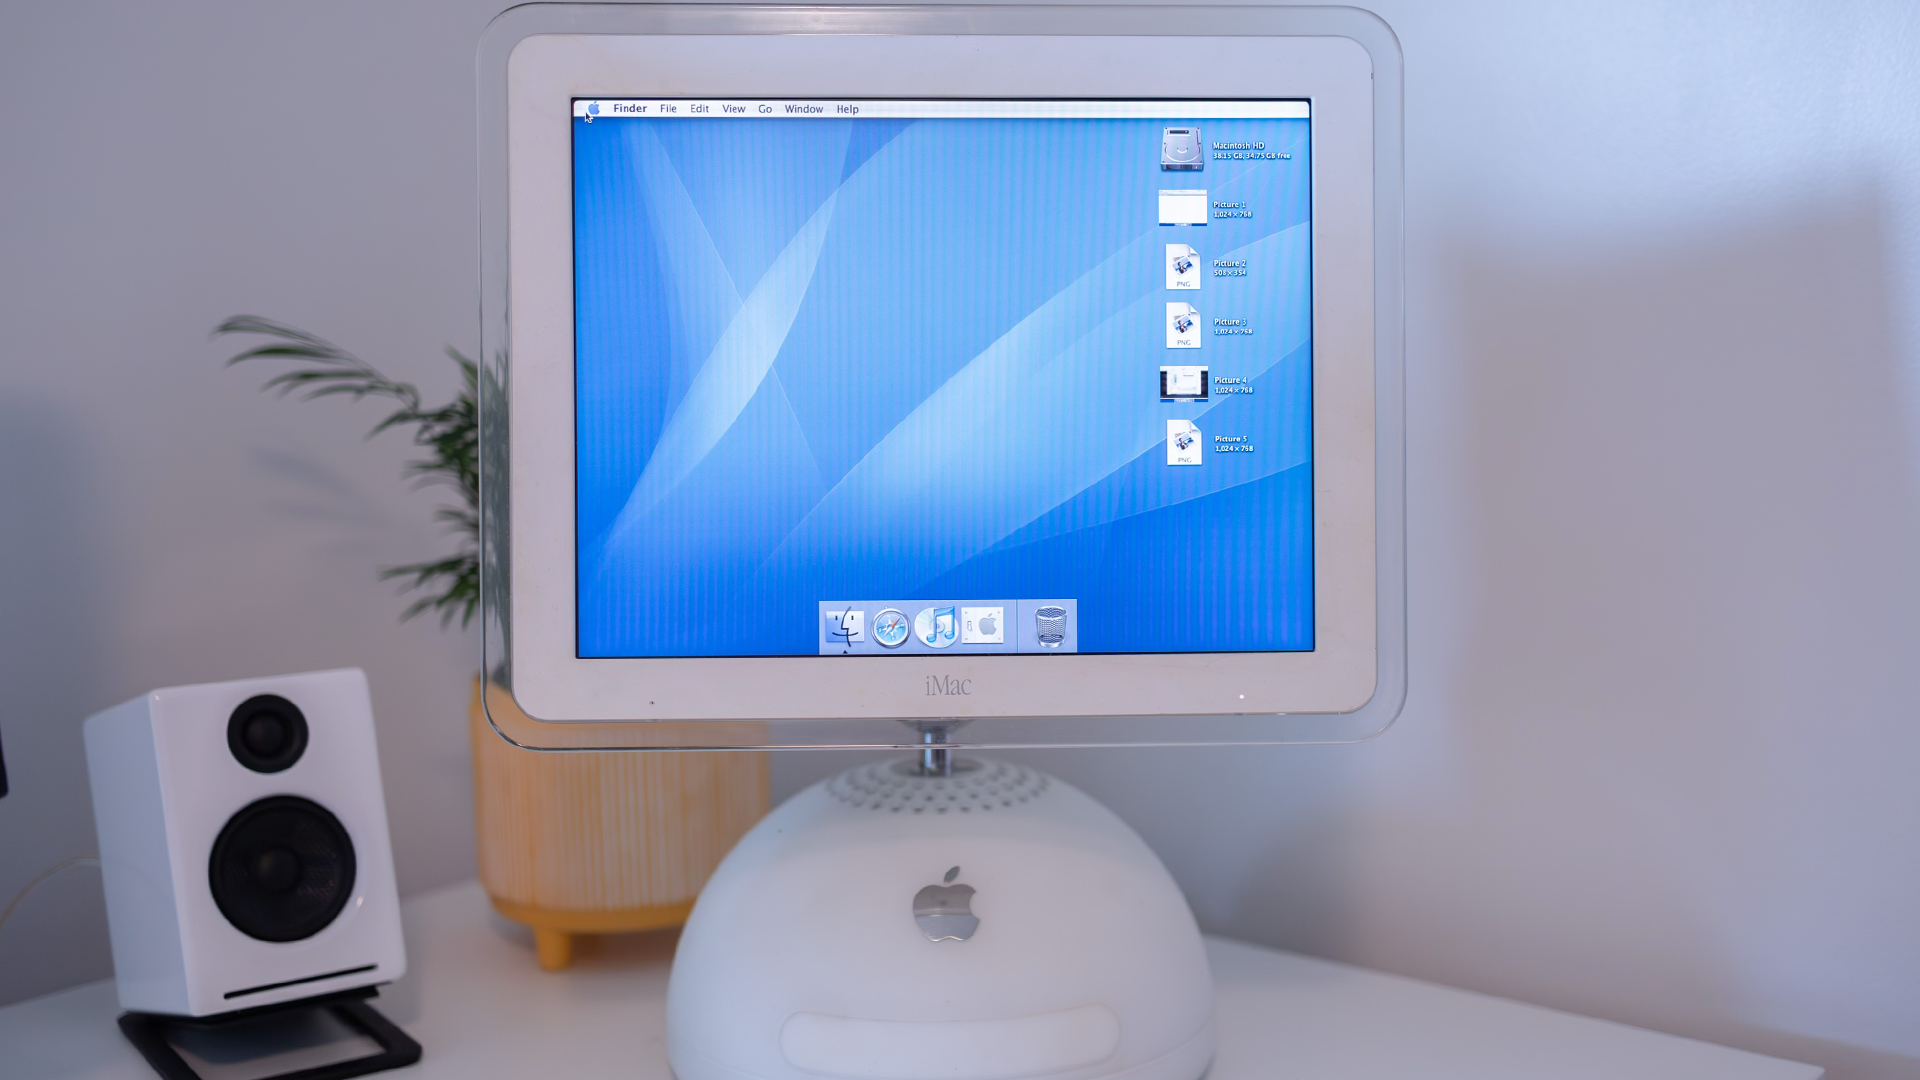 iMac G4 on desk